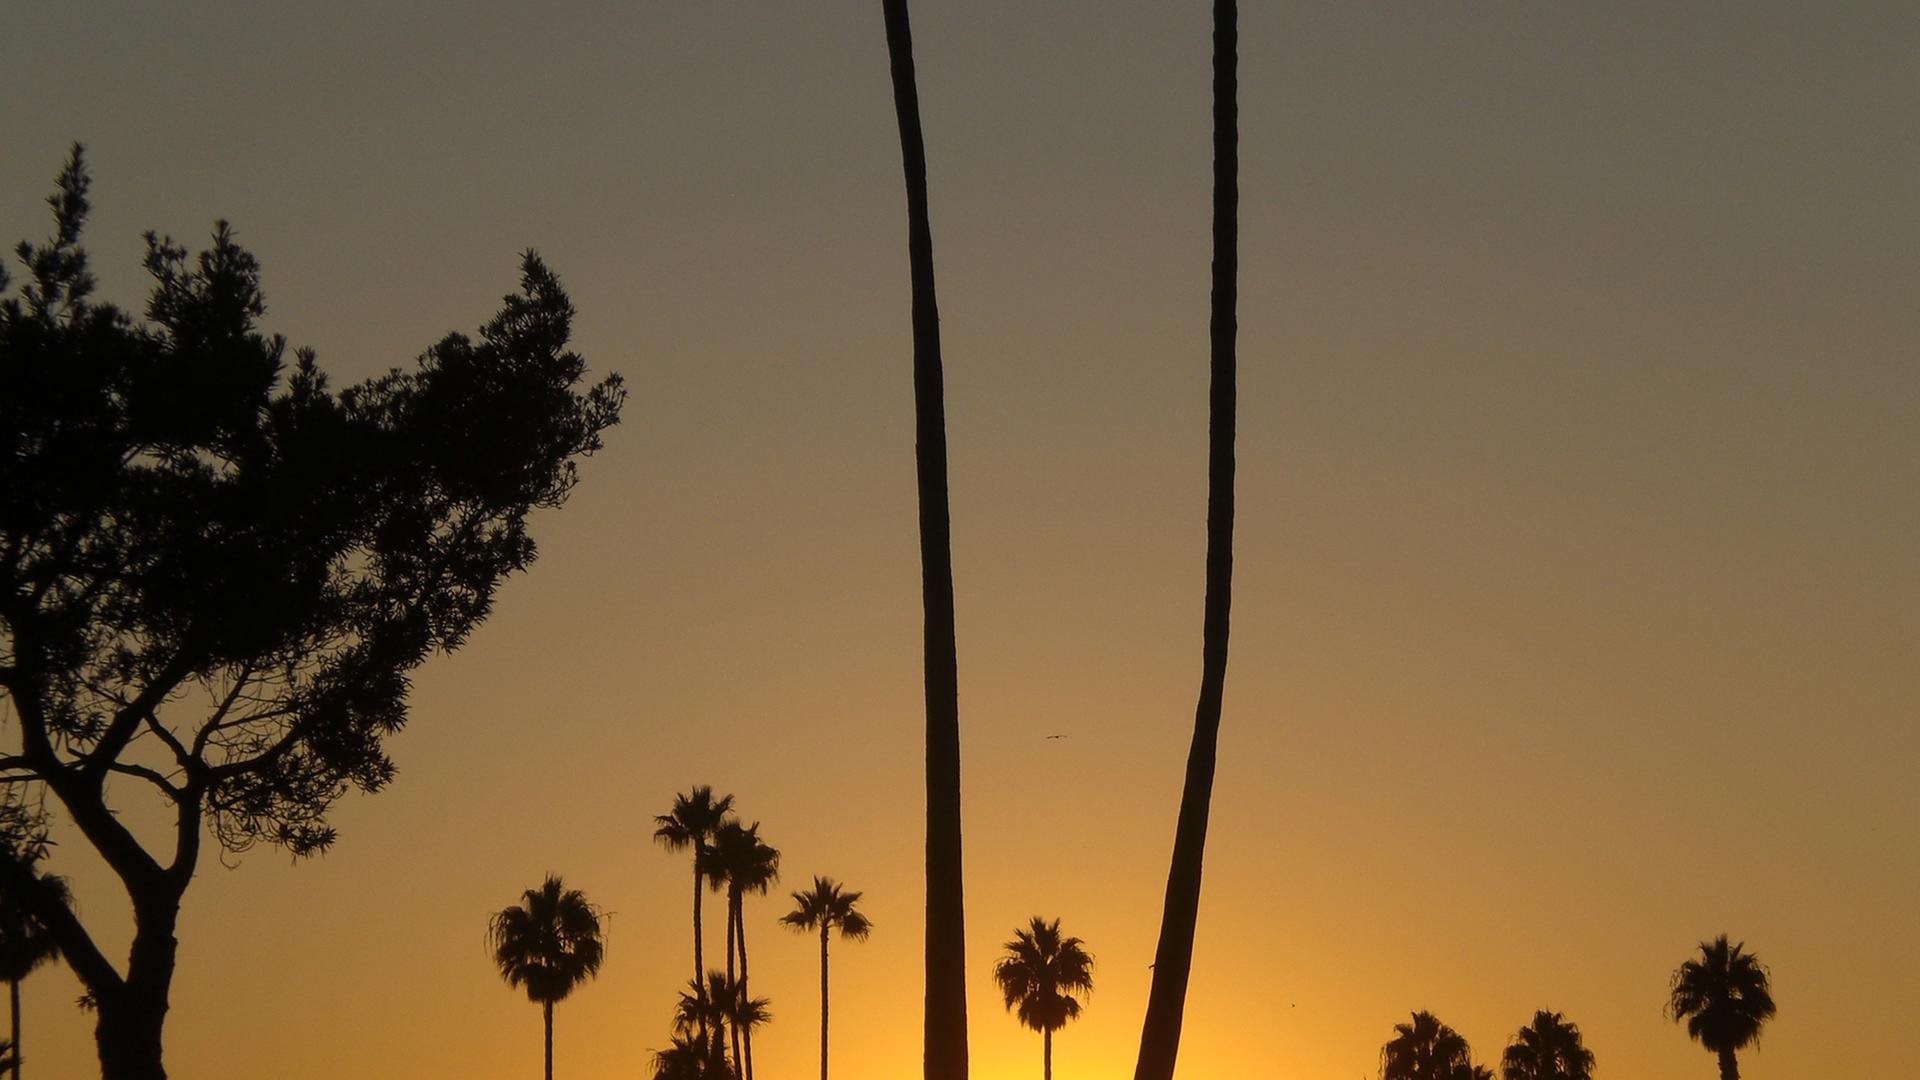 Sonnenuntergang Santa Monica, Kalifornien. Ist bald mit einem großen Beben zu rechnen?